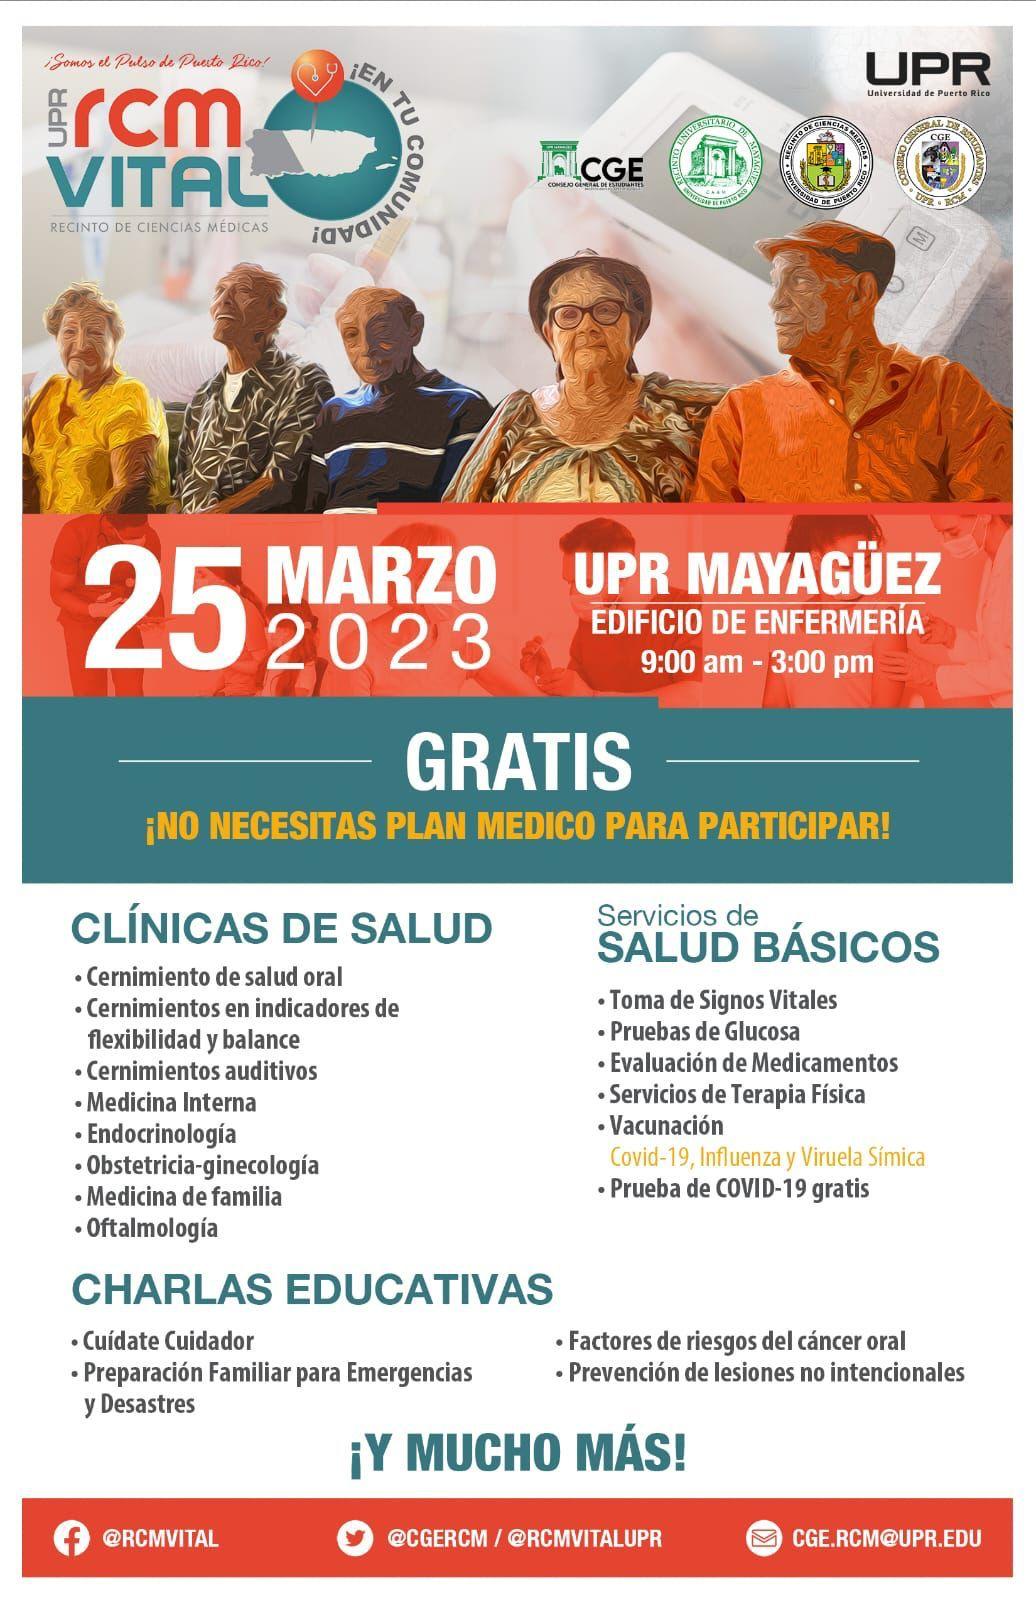 Ciencias Médicas llevará clínicas de salud gratuitas a Mayagüez